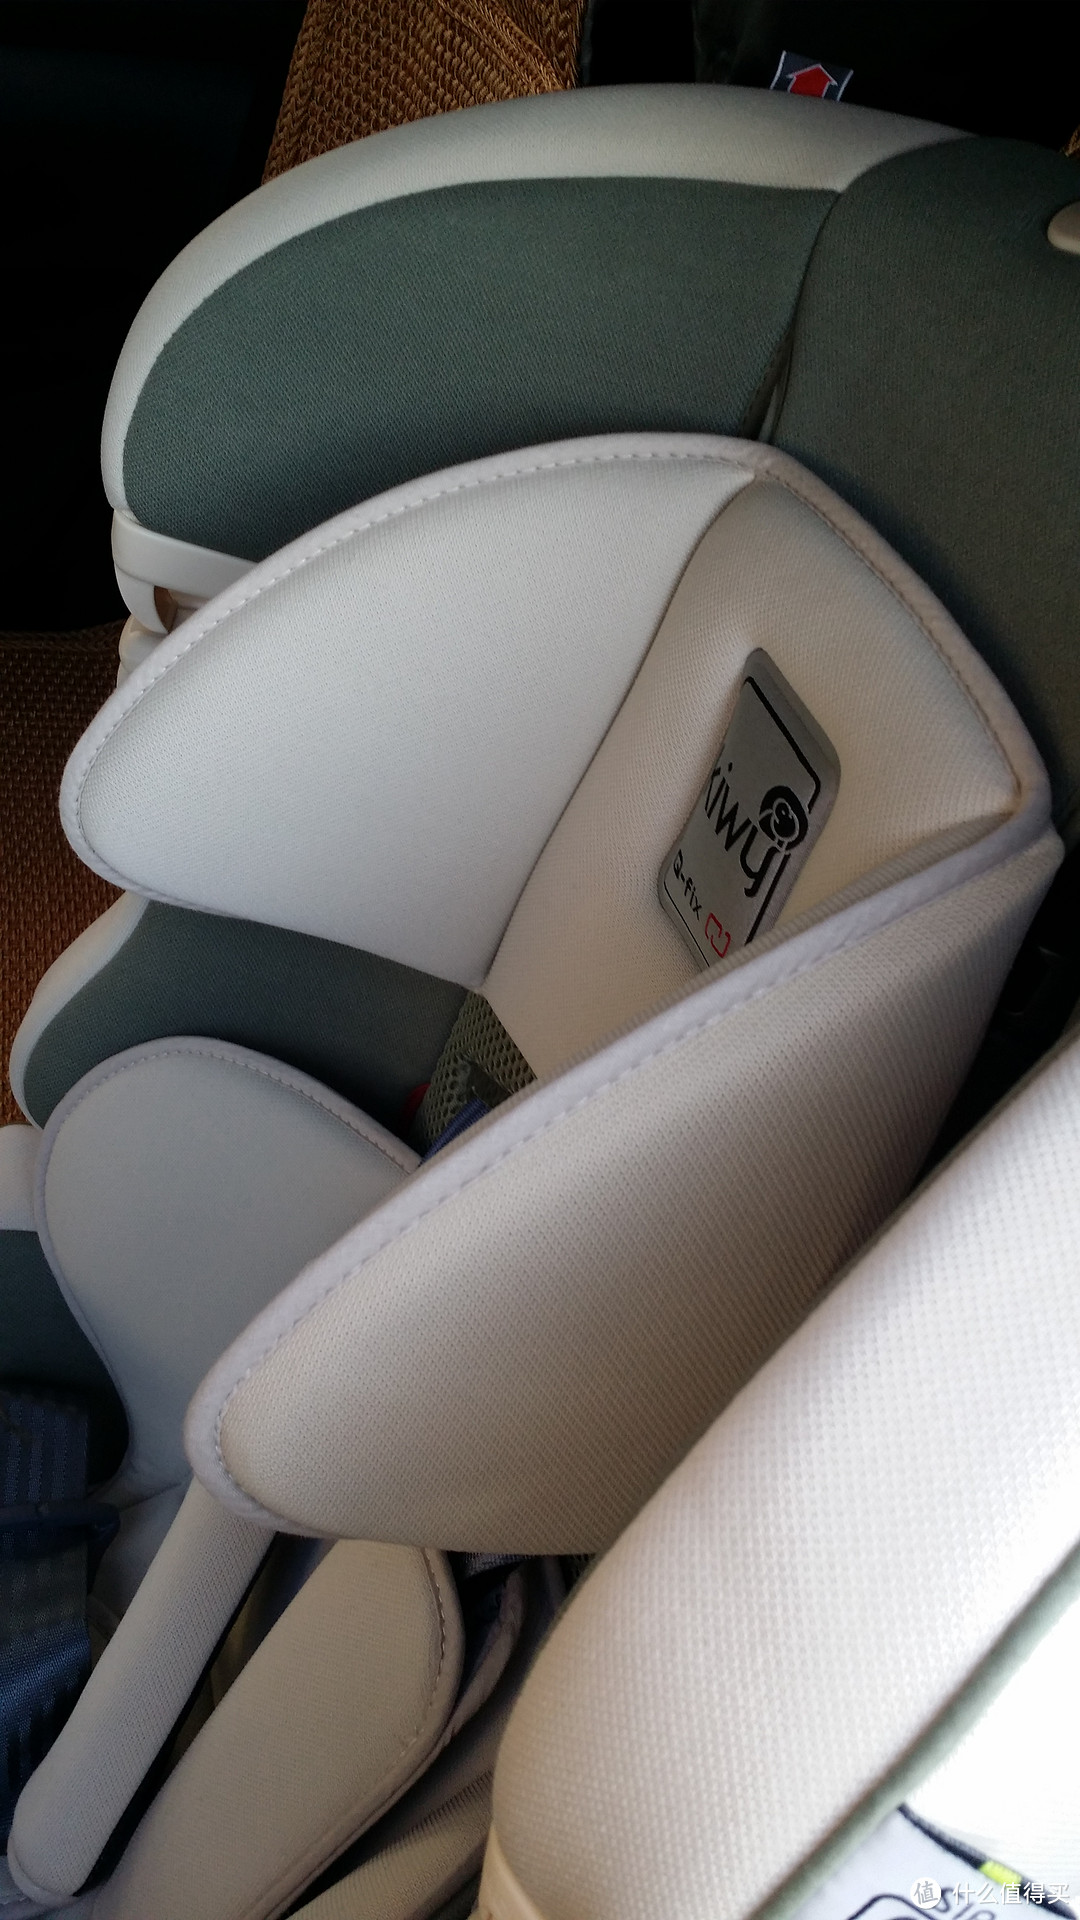 #原创新人# 宝宝出行座驾：Kiwy SLF123 意大利原装进口安全座椅（附简单评测）